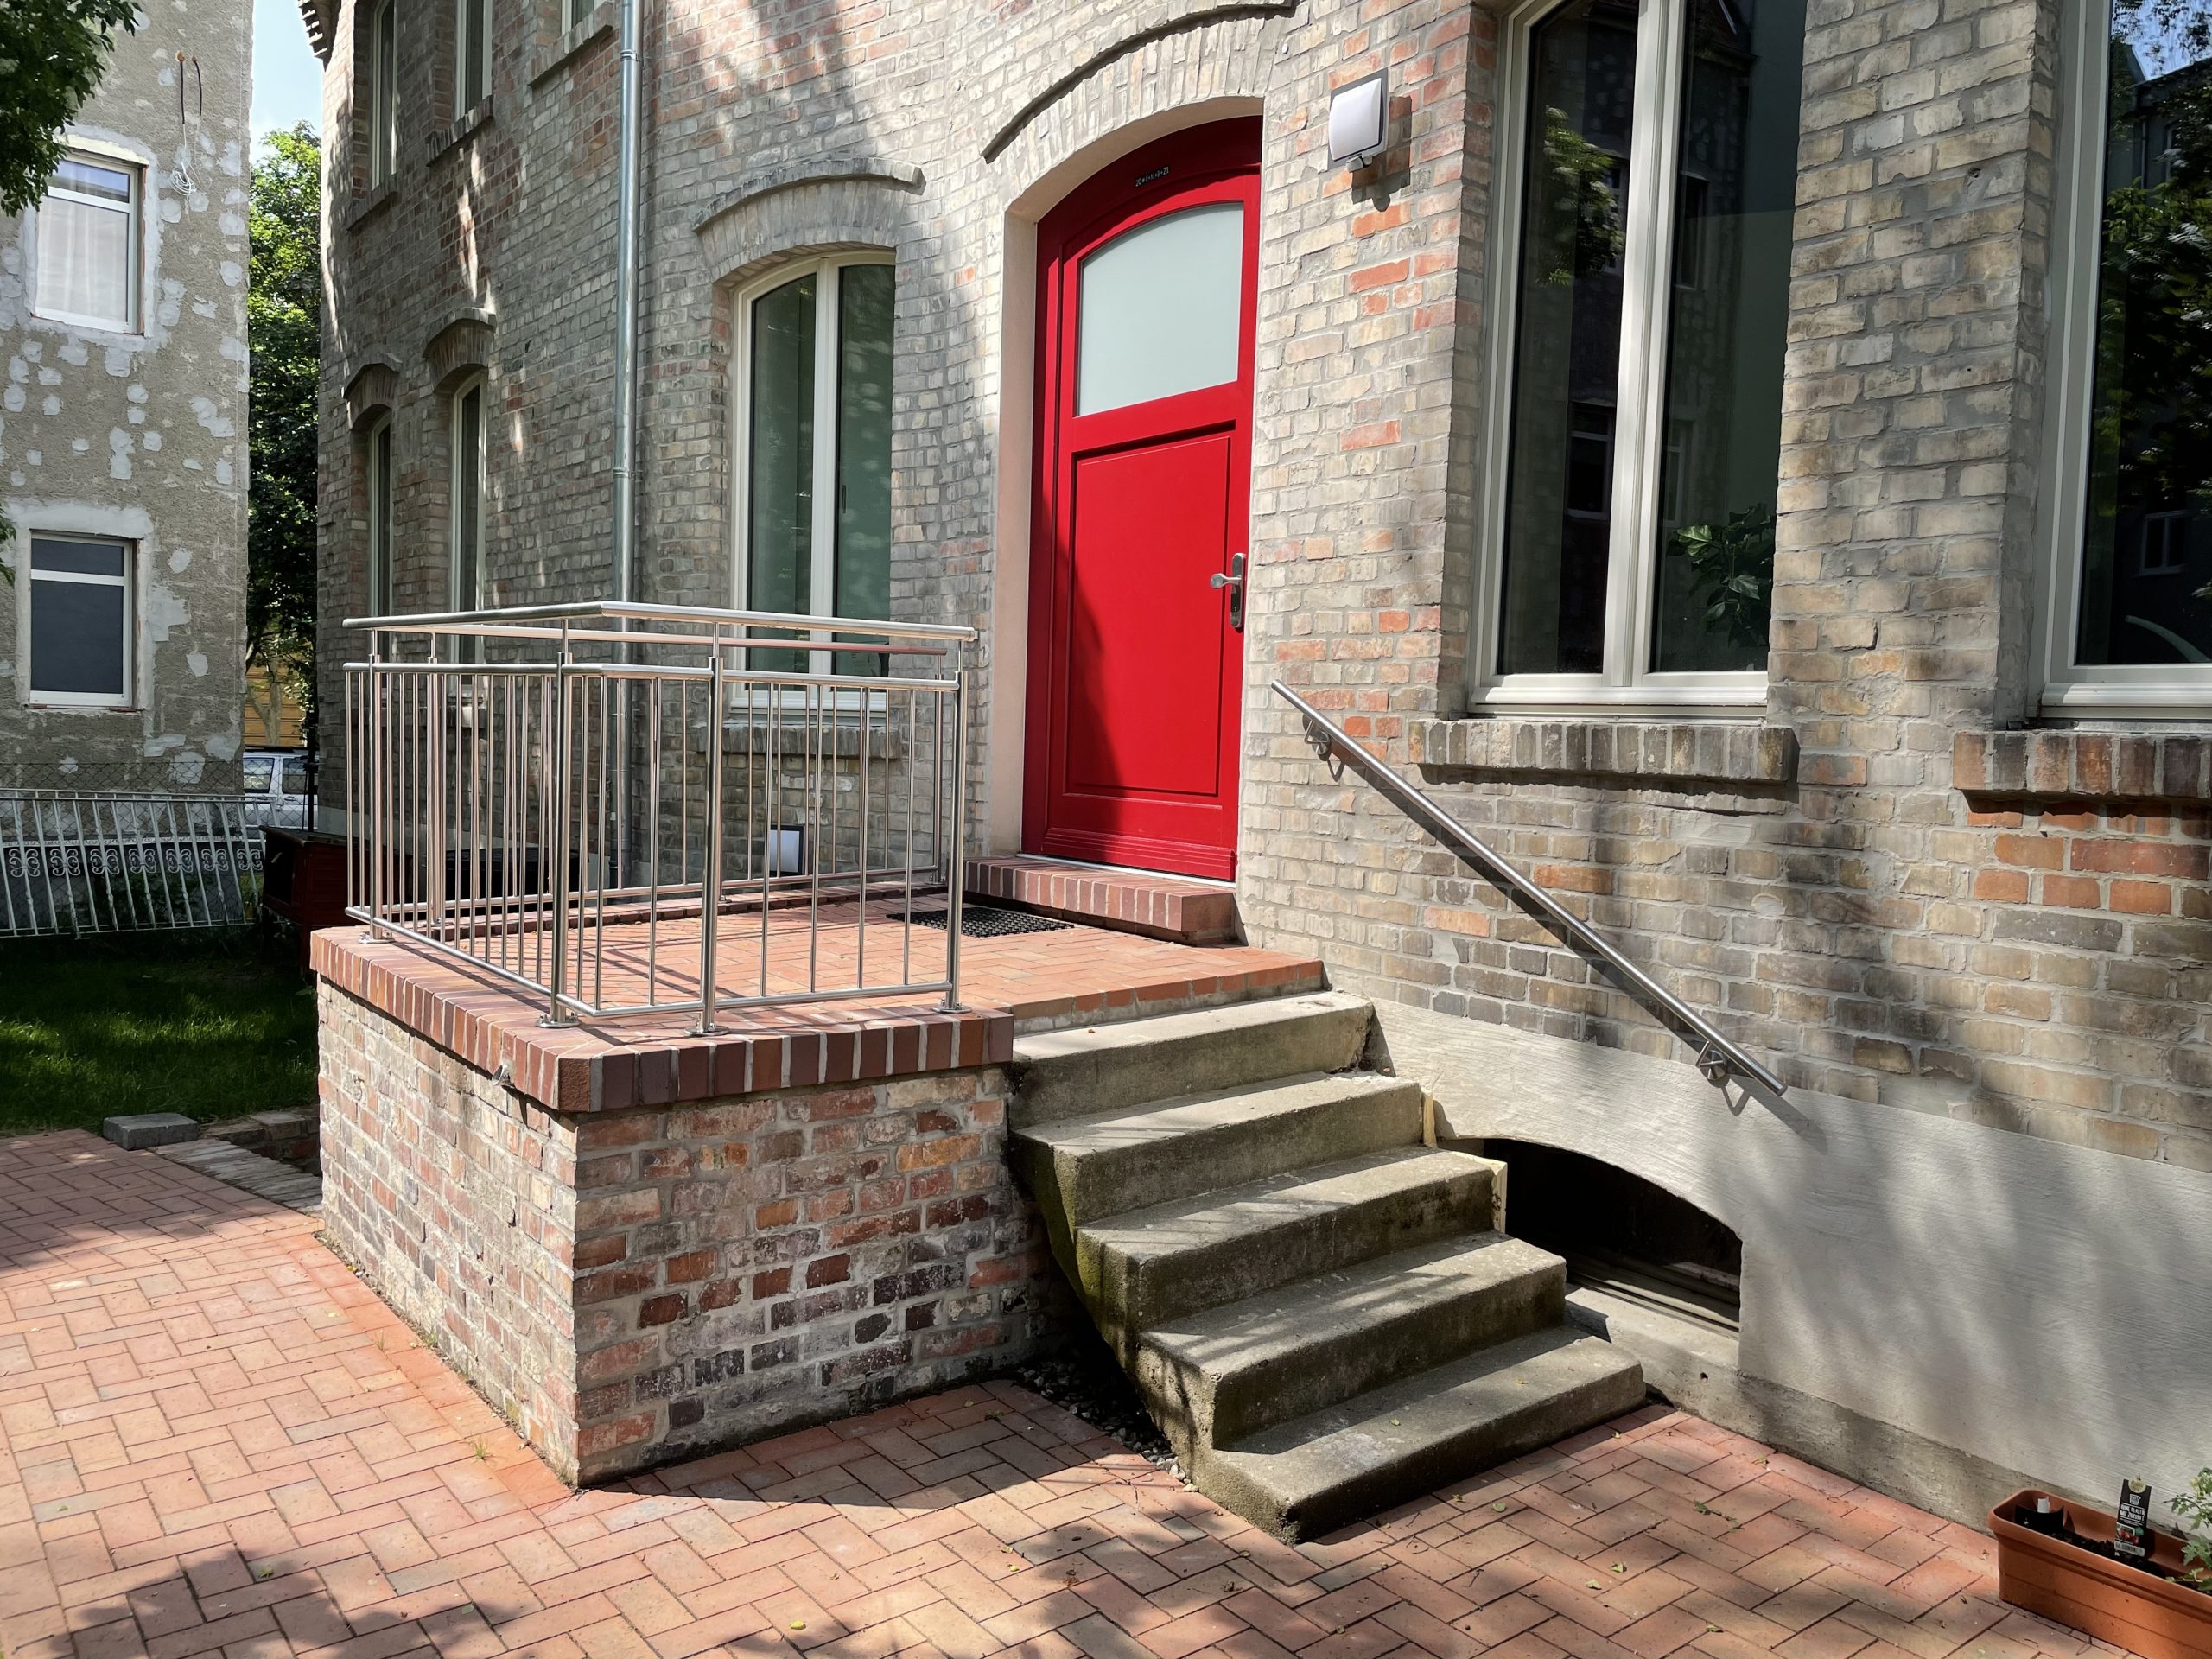 Fotografie der steinernen Eingangstreppe und der roten Eingangstür des Hinterhauses im Glauchaviertel